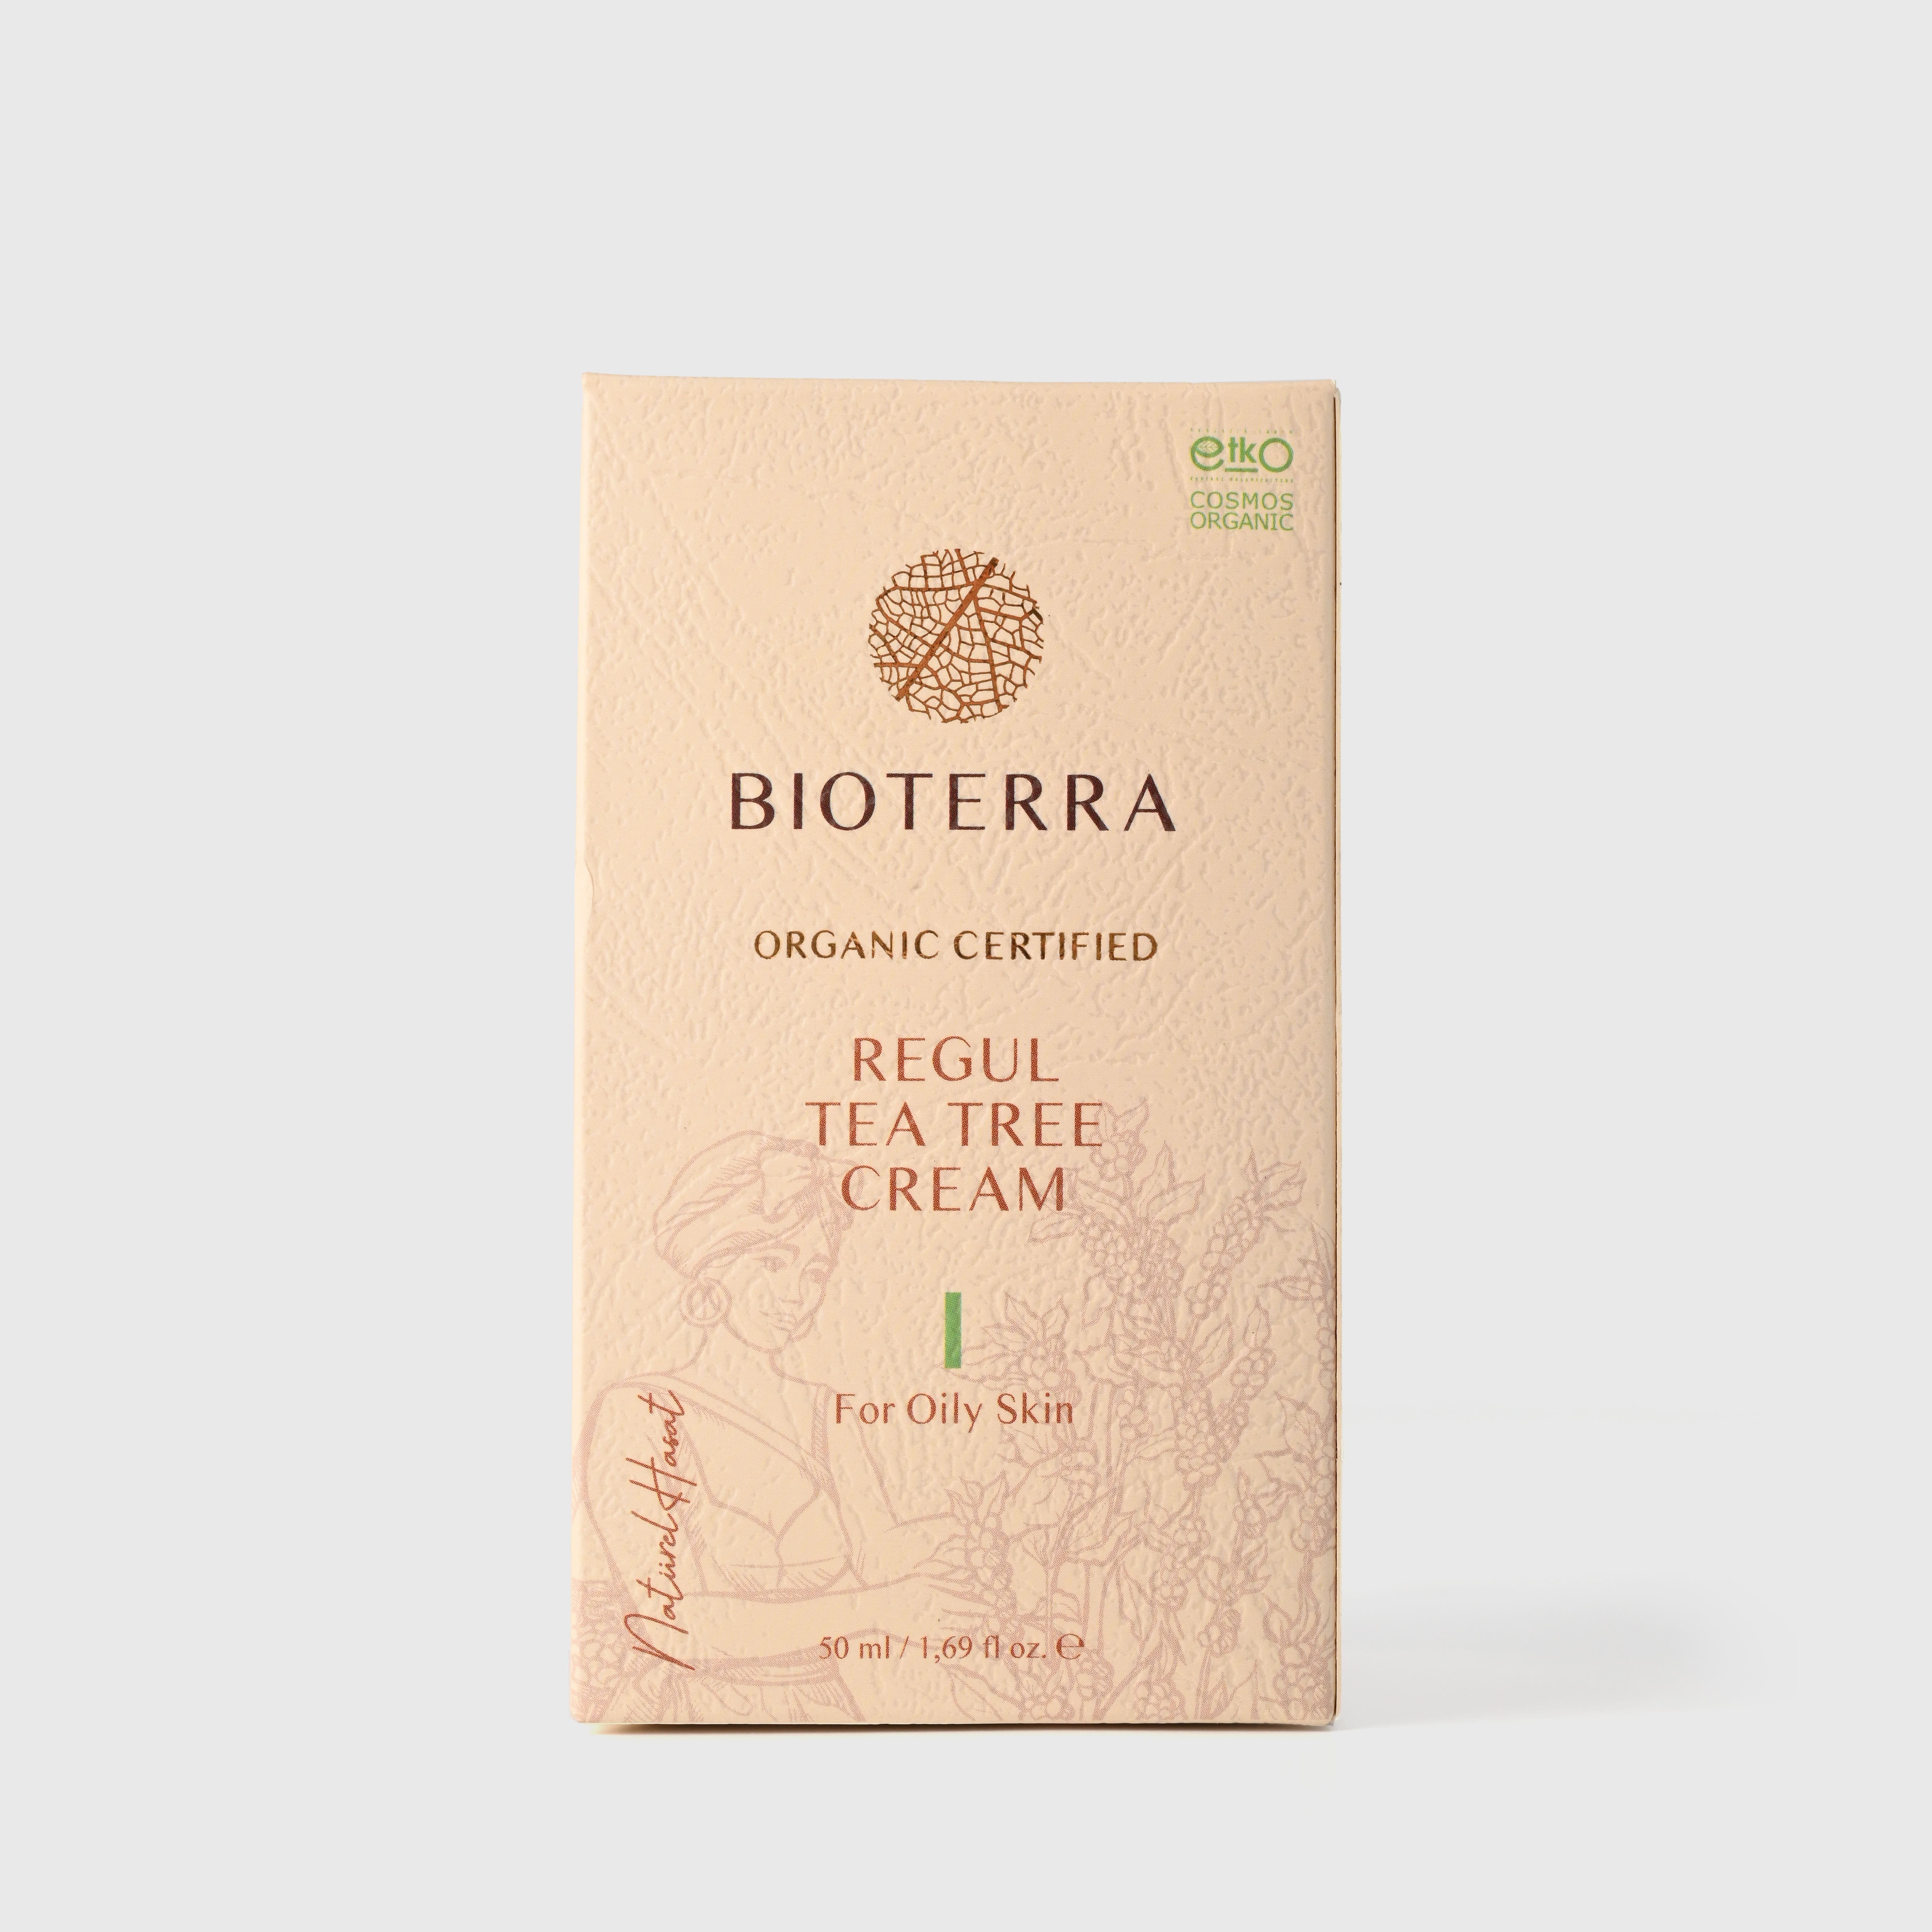 Naturkosmetik Bio Creme BIOTERRA 1-tlg. Vegan Nachhaltig, Teebaum Regulierende Gesichtspflege 50ml